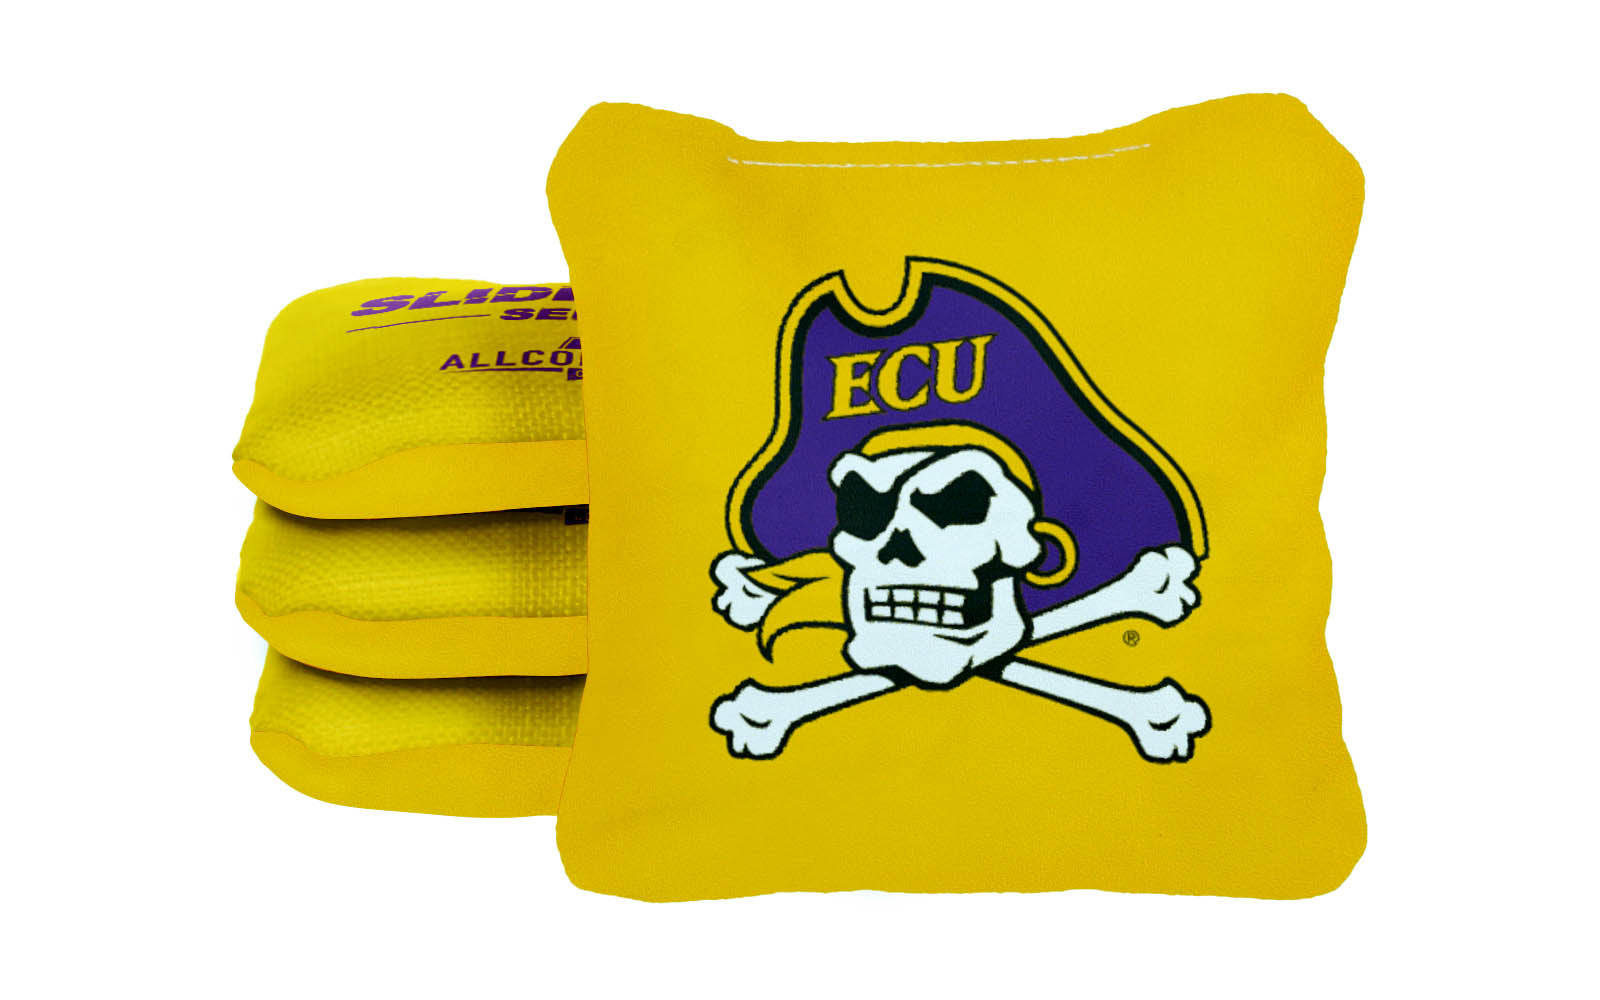 Officially Licensed Collegiate Cornhole Bags - AllCornhole Slide Rite - Set of 4 - East Carolina University